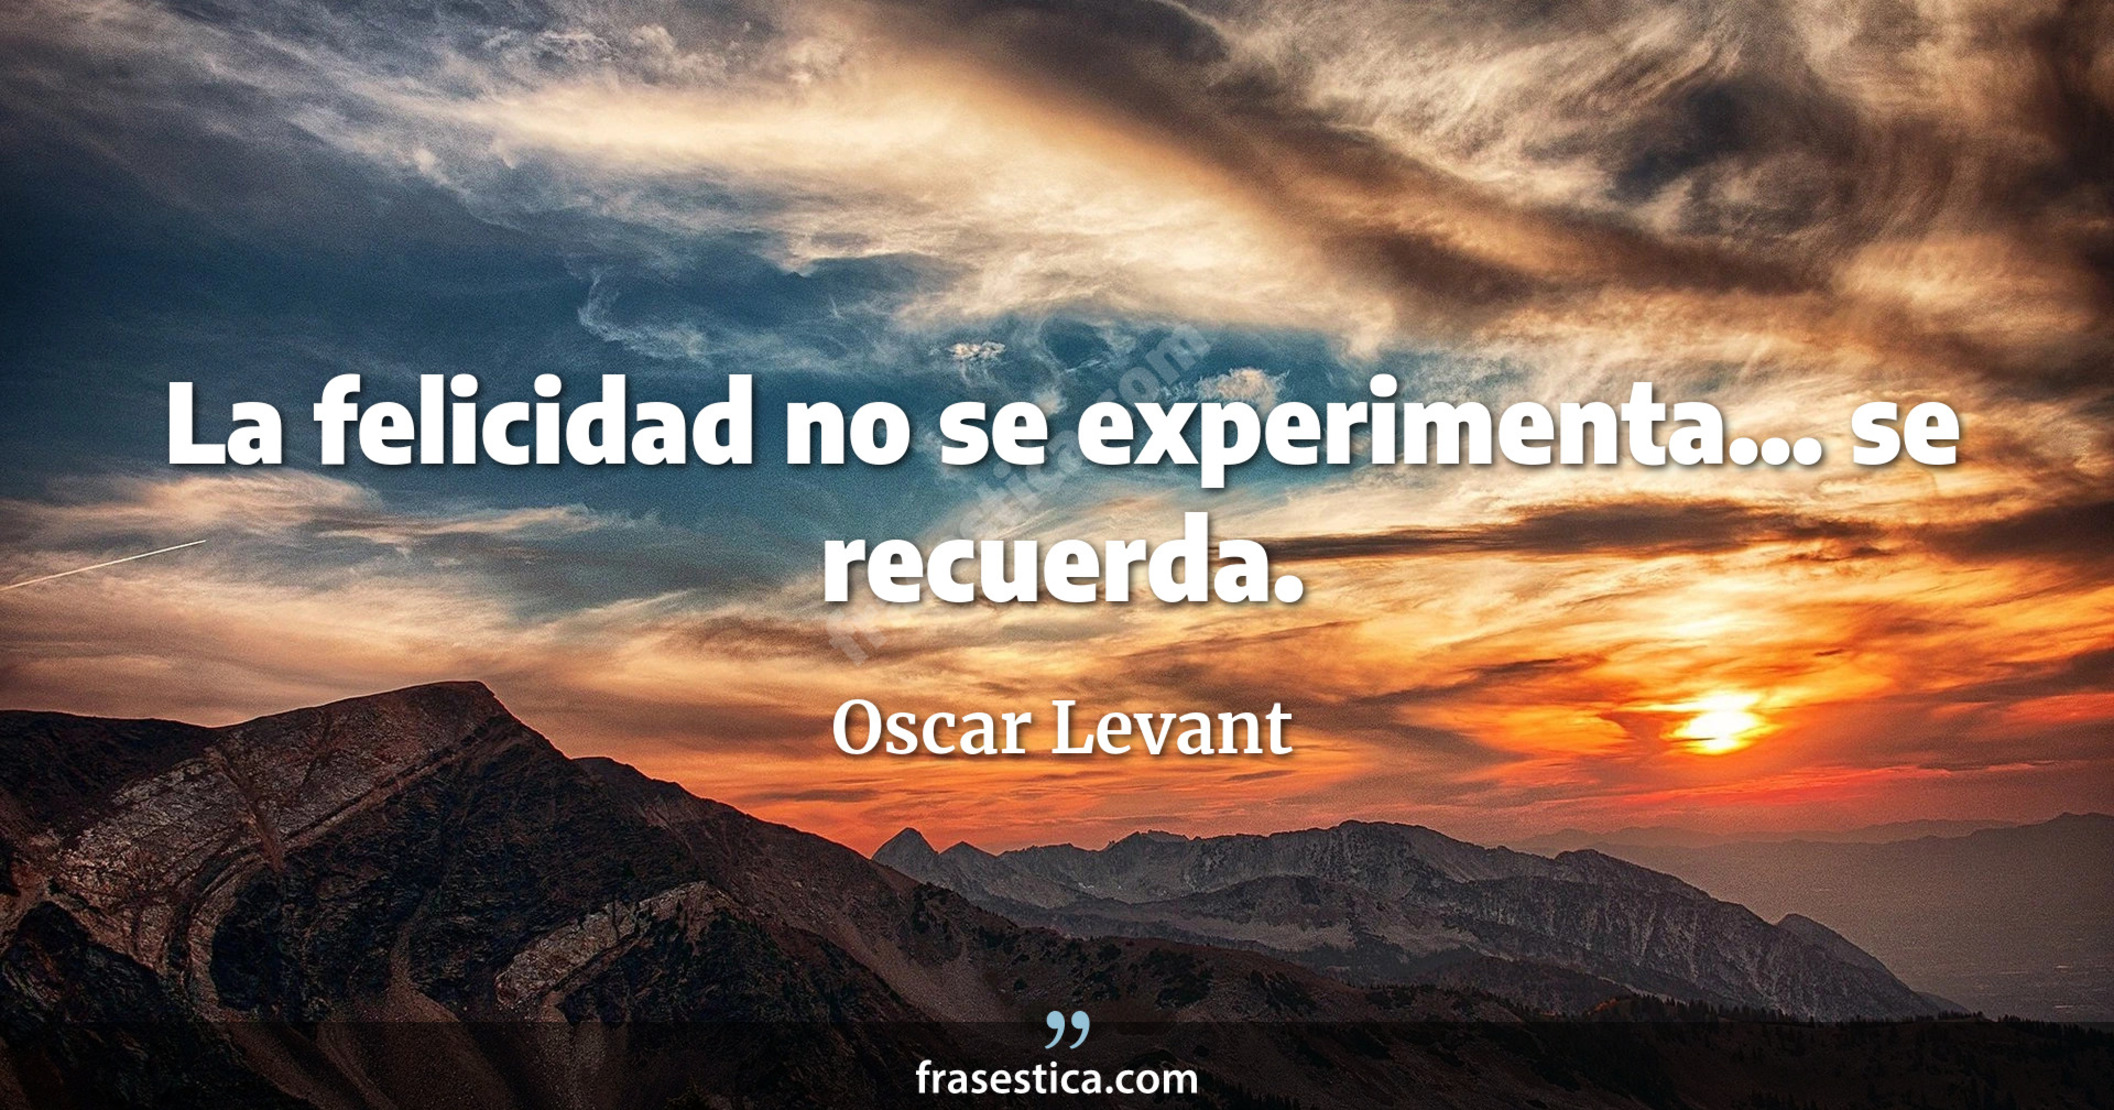 La felicidad no se experimenta... se recuerda. - Oscar Levant